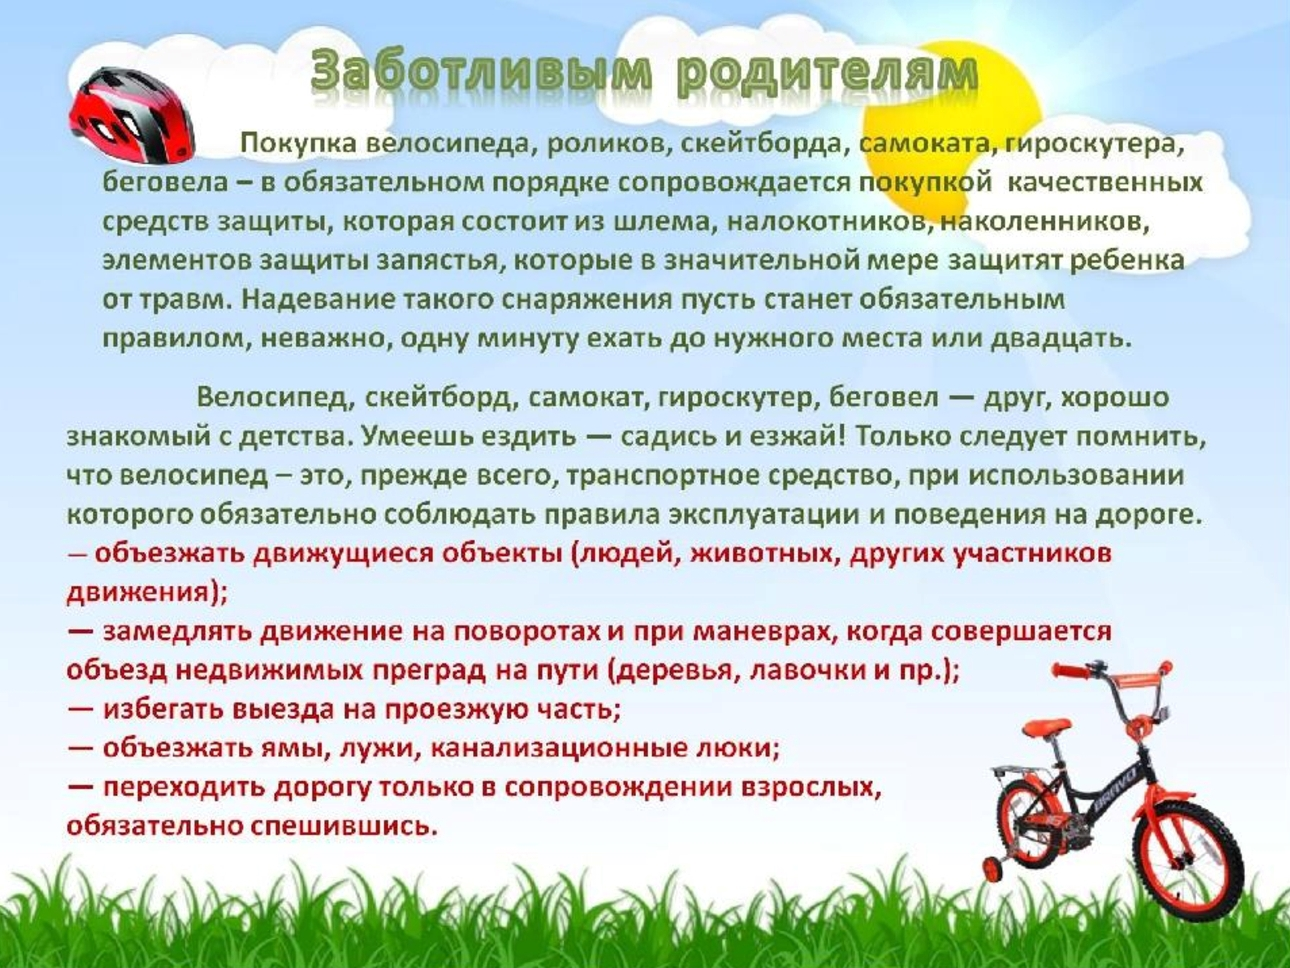 До какого возраста детям запрещено. Безопасность на велосипедах для дошкольников. Безопасность на велосипеде и самокате для детей. Памятки для родителей по велосипедам. Памятка для велосипедиста для детей.